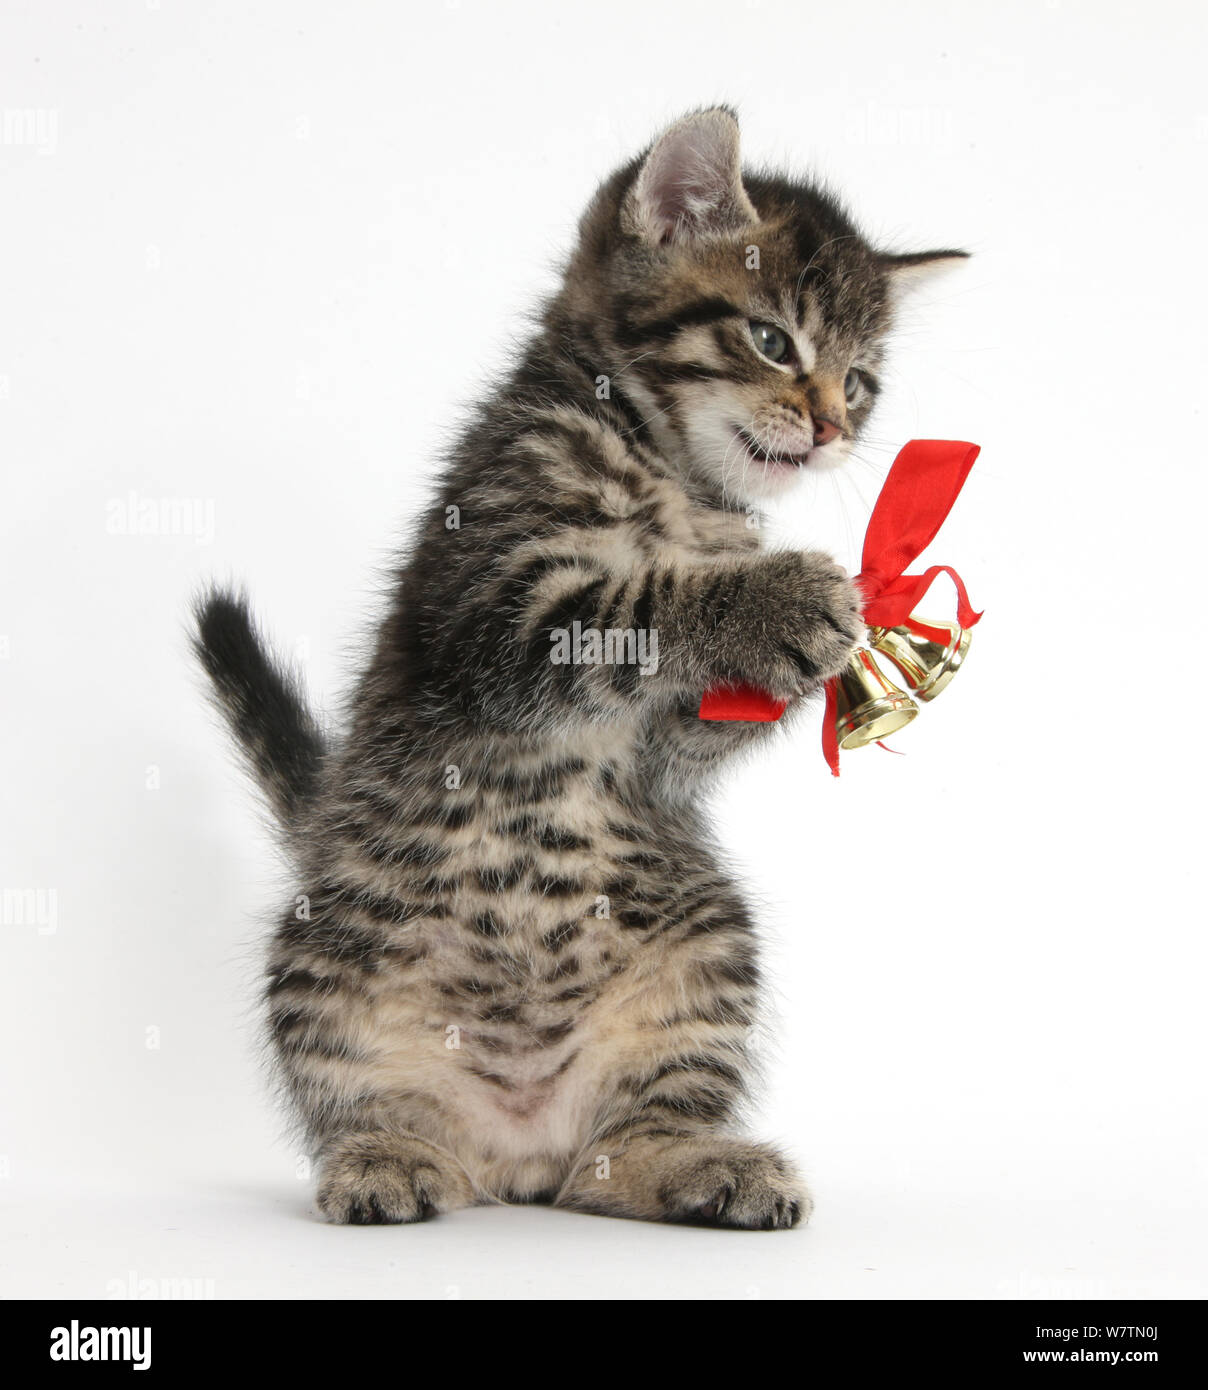 Carino tabby kitten, Fosset, 7 settimane, giocando con le campane di Natale su un nastro rosso, contro uno sfondo bianco Foto Stock